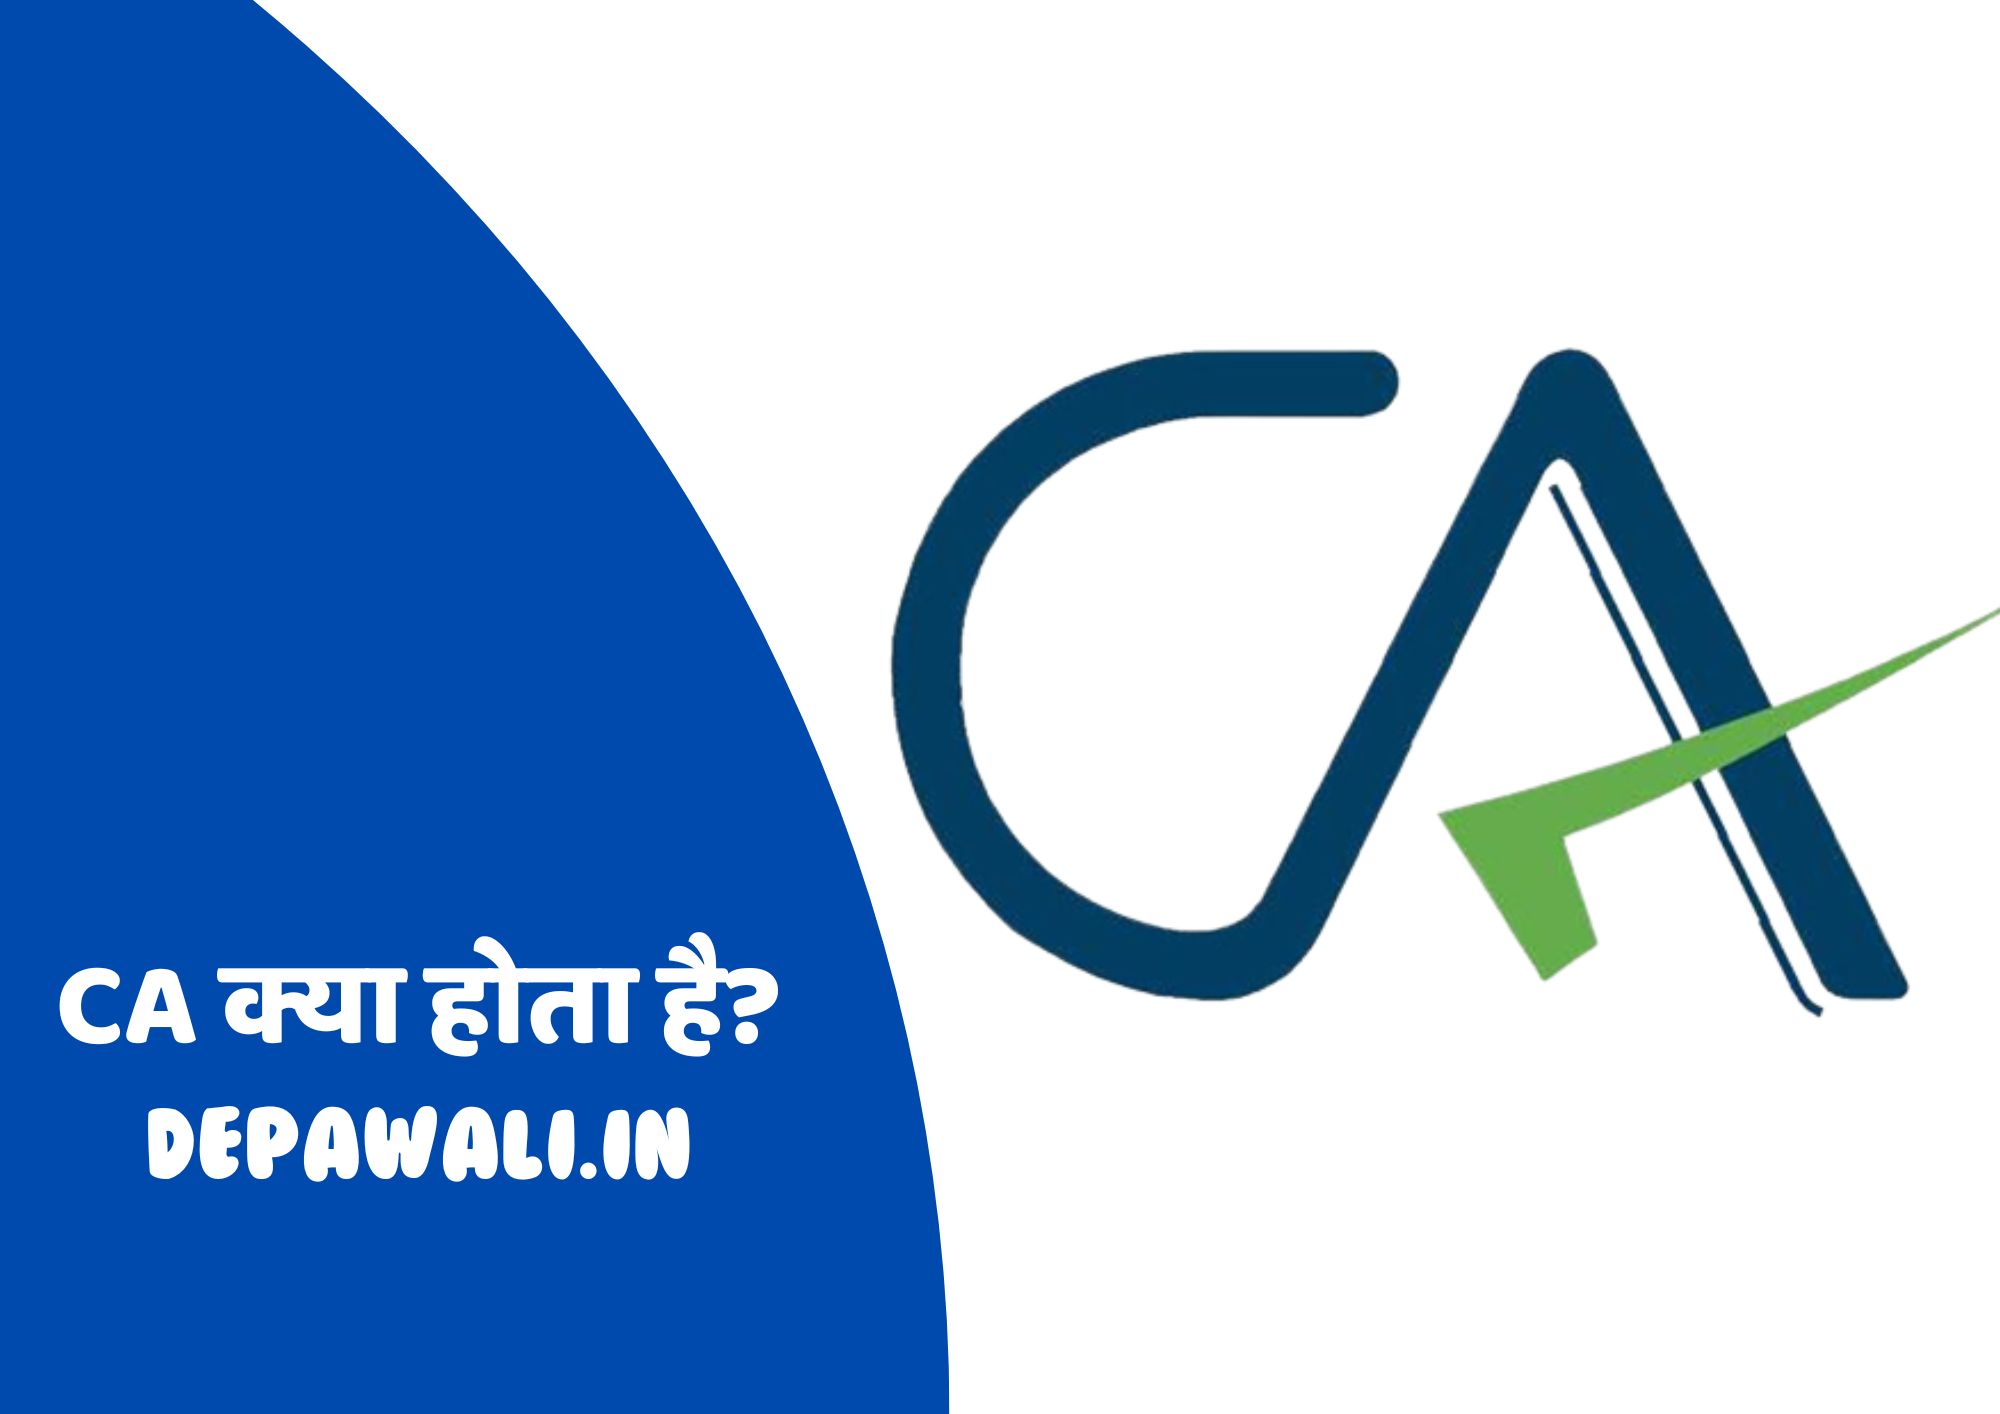 सीए क्या होता है, सीए का मतलब क्या होता है, सीए का क्या काम होता है और सीए कैसे बने? - CA Kya Hota Hai In Hindi